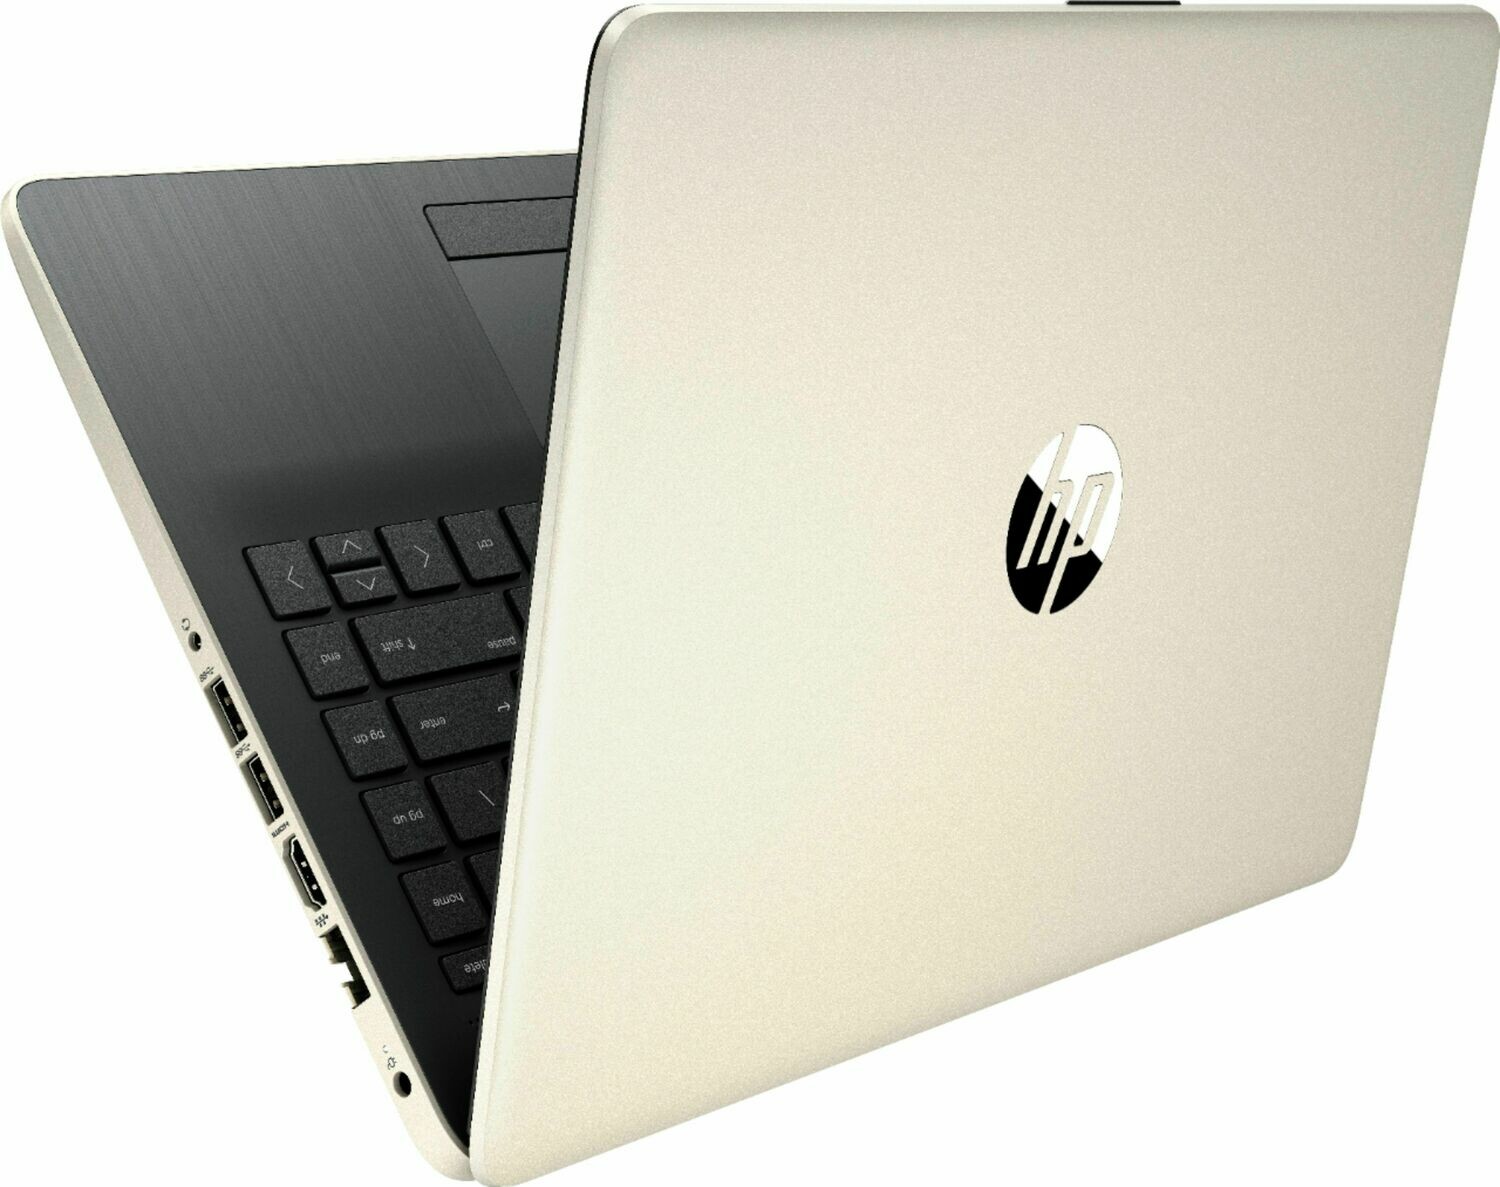 HP 14" Laptop with Ryzen 3- 3250U 2.6 ghz up to 3.5 ghz processor